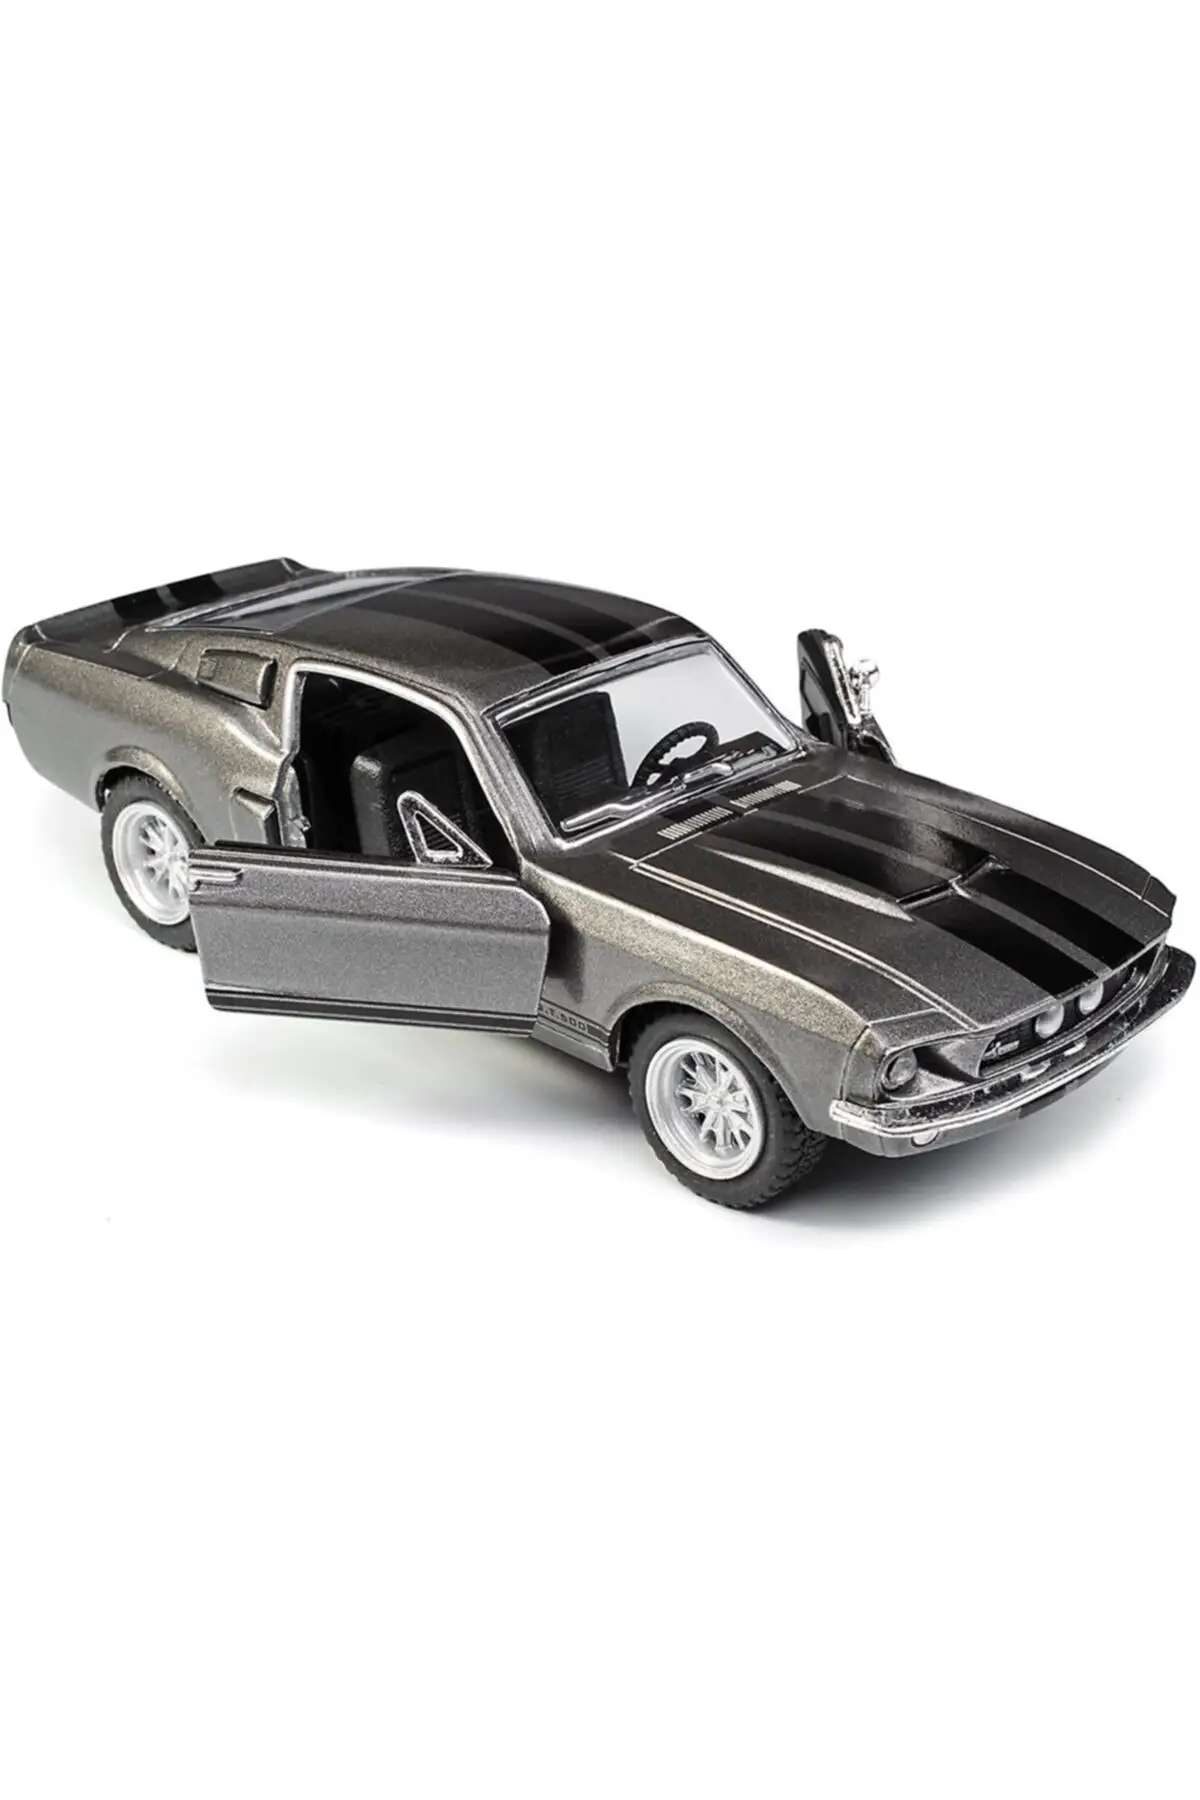 Tanio 1967 Shelby Gt500 Çekbırak Model